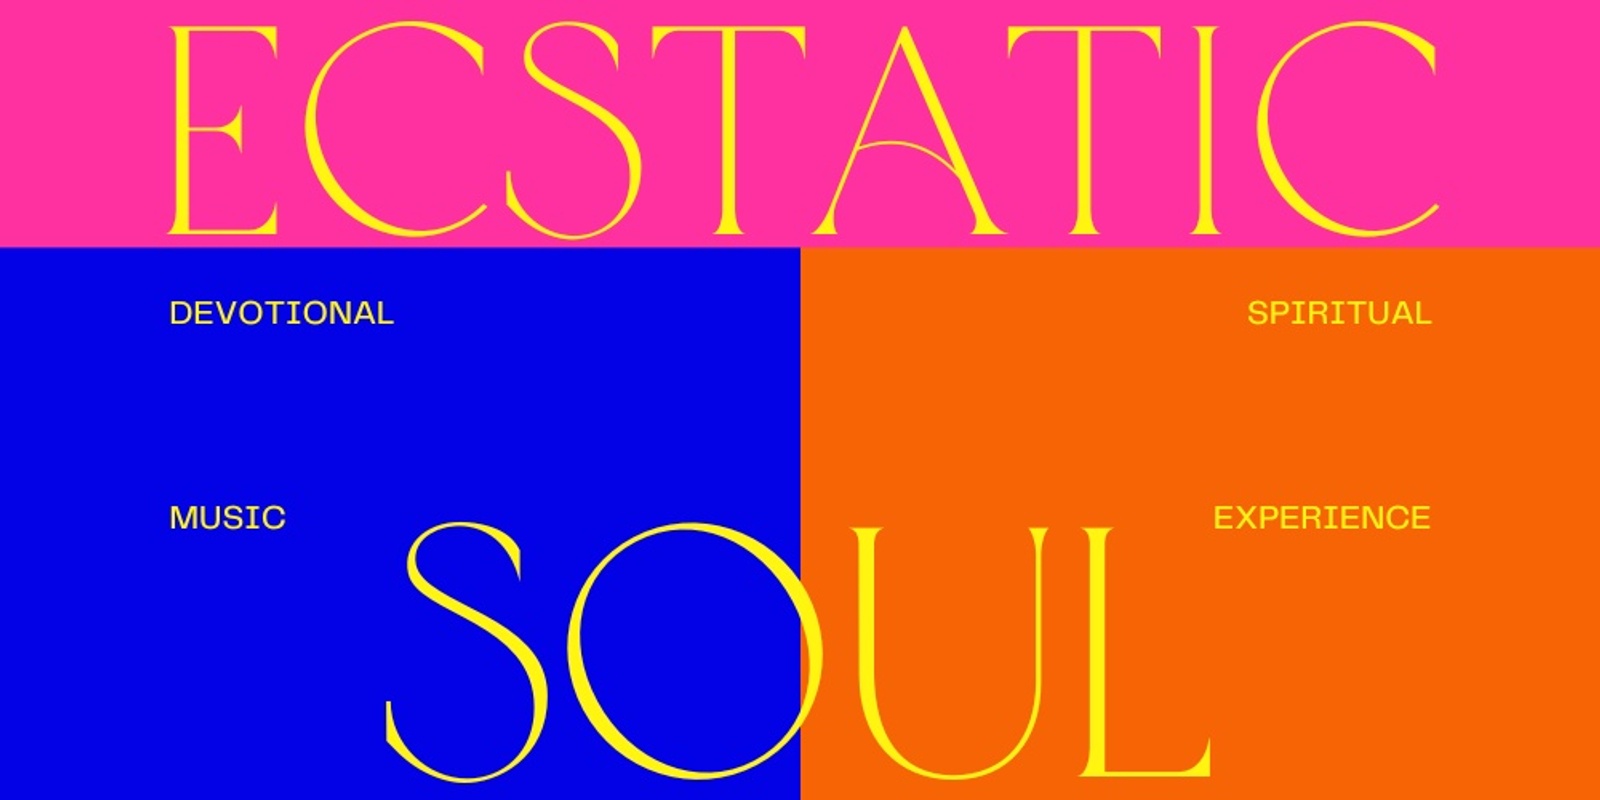 Banner image for Ecstatic Soul